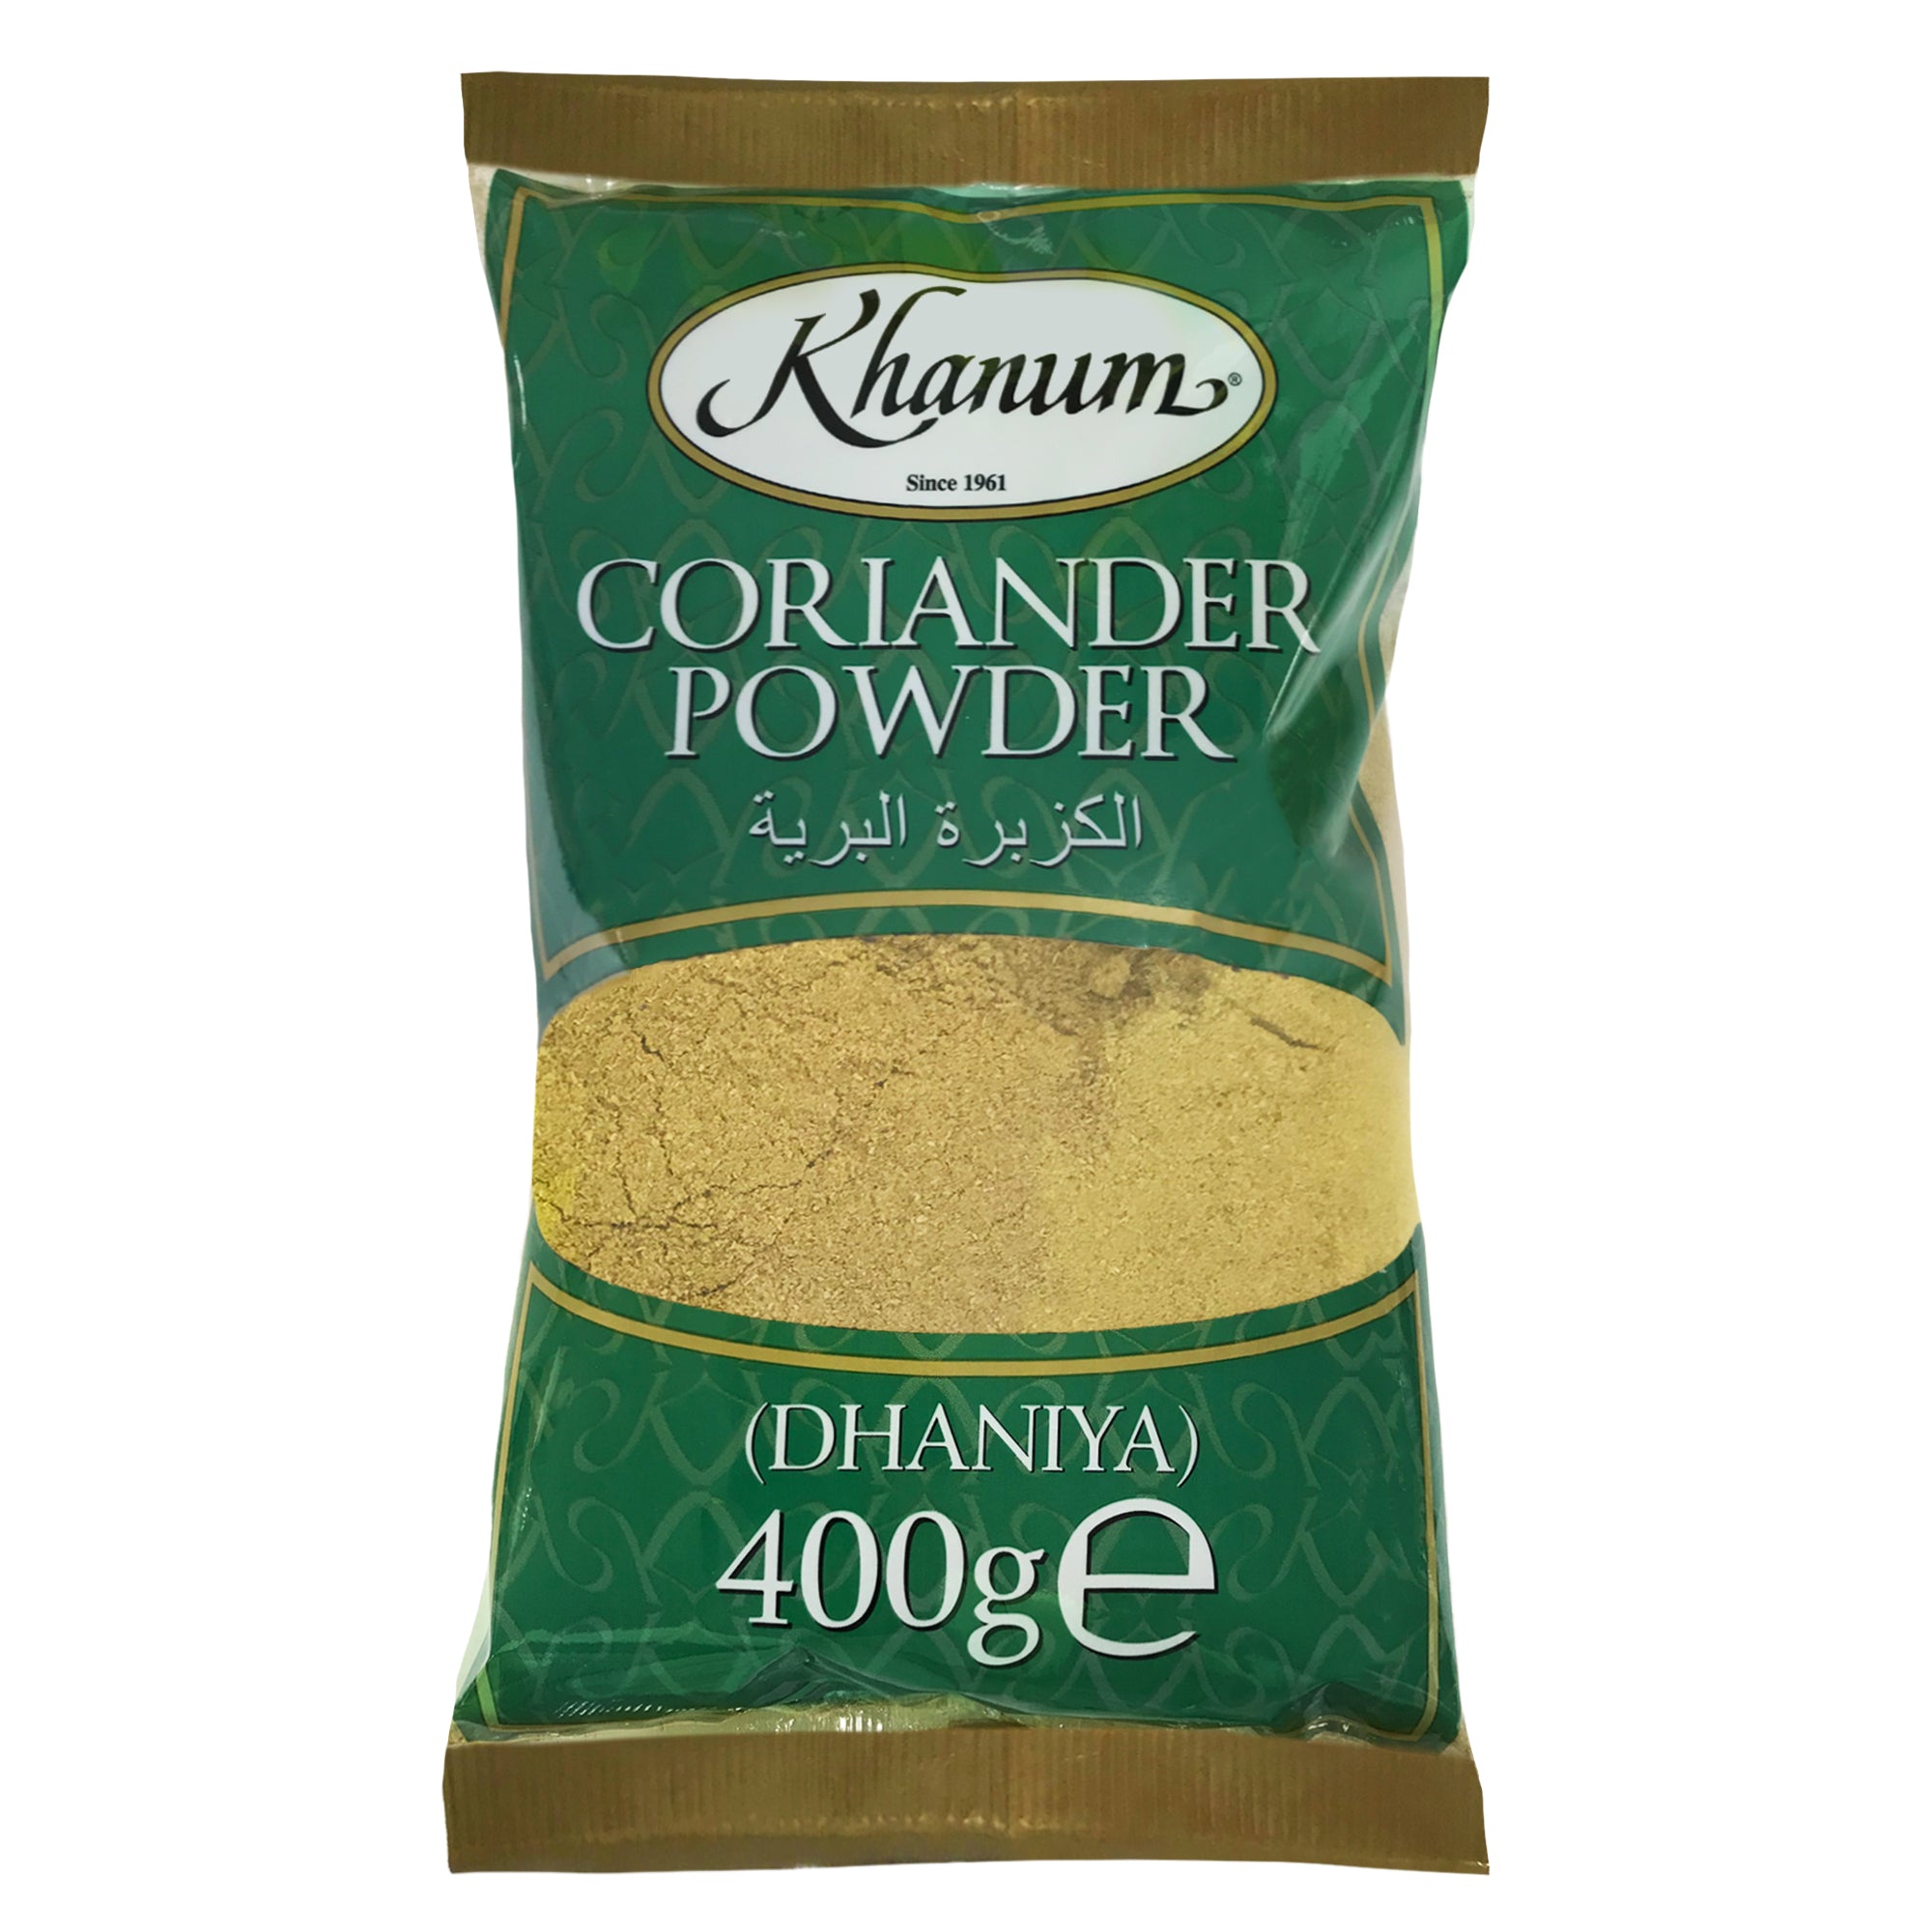 Khanum Coriander Powder (Dhaniya) 10x400g